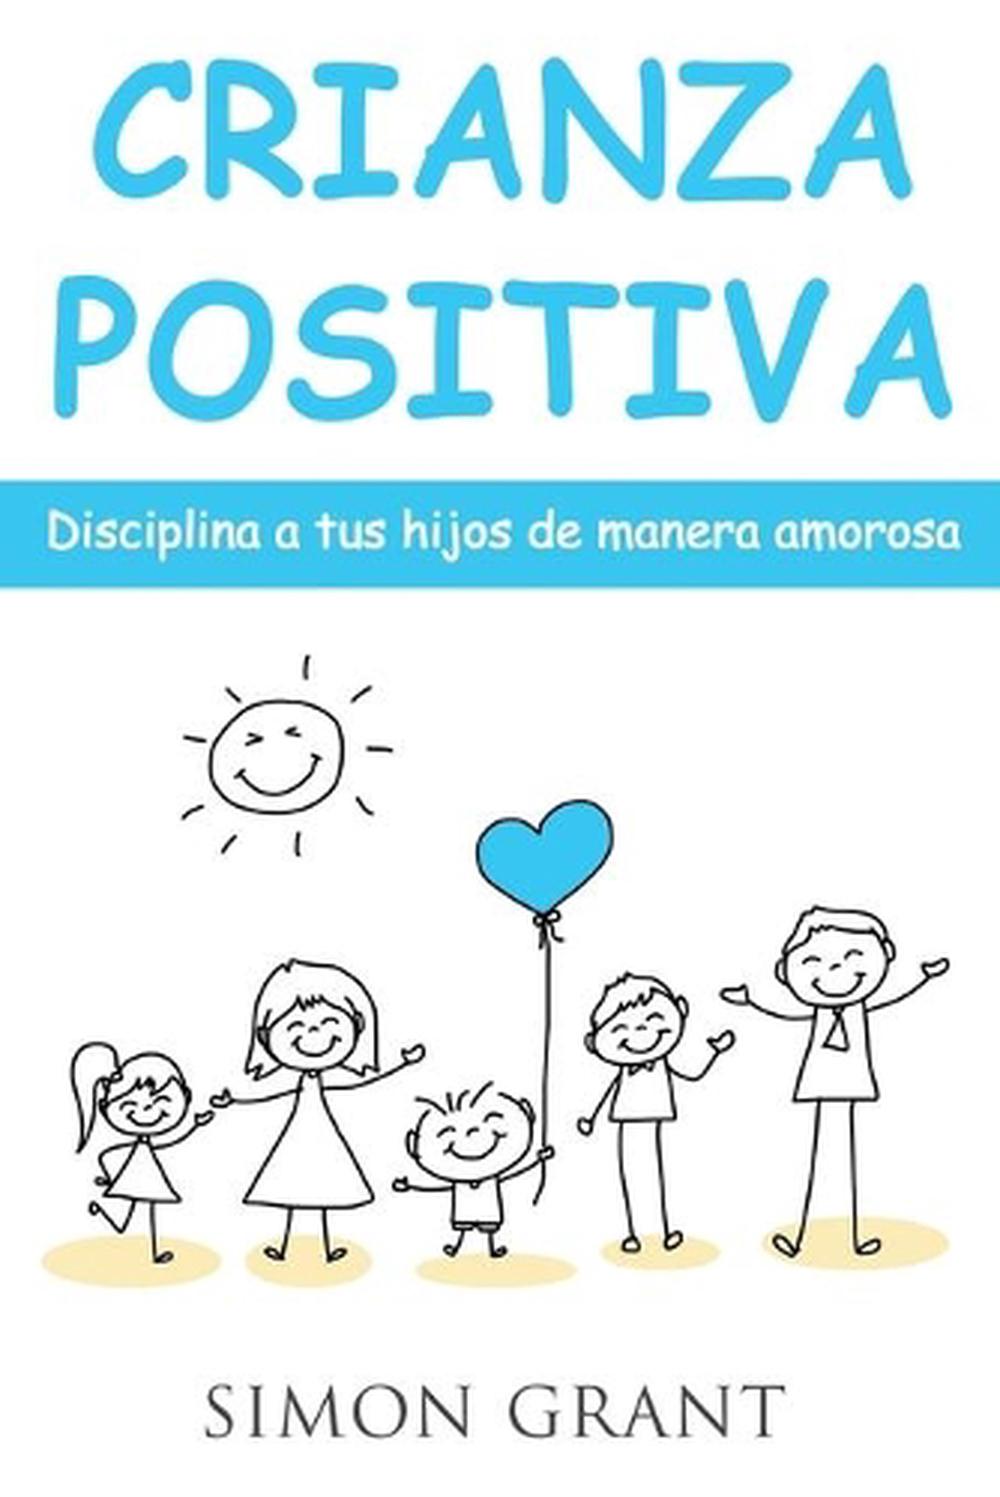 Crianza positiva: Disciplina a tus hijos de manera amorosa by Simon